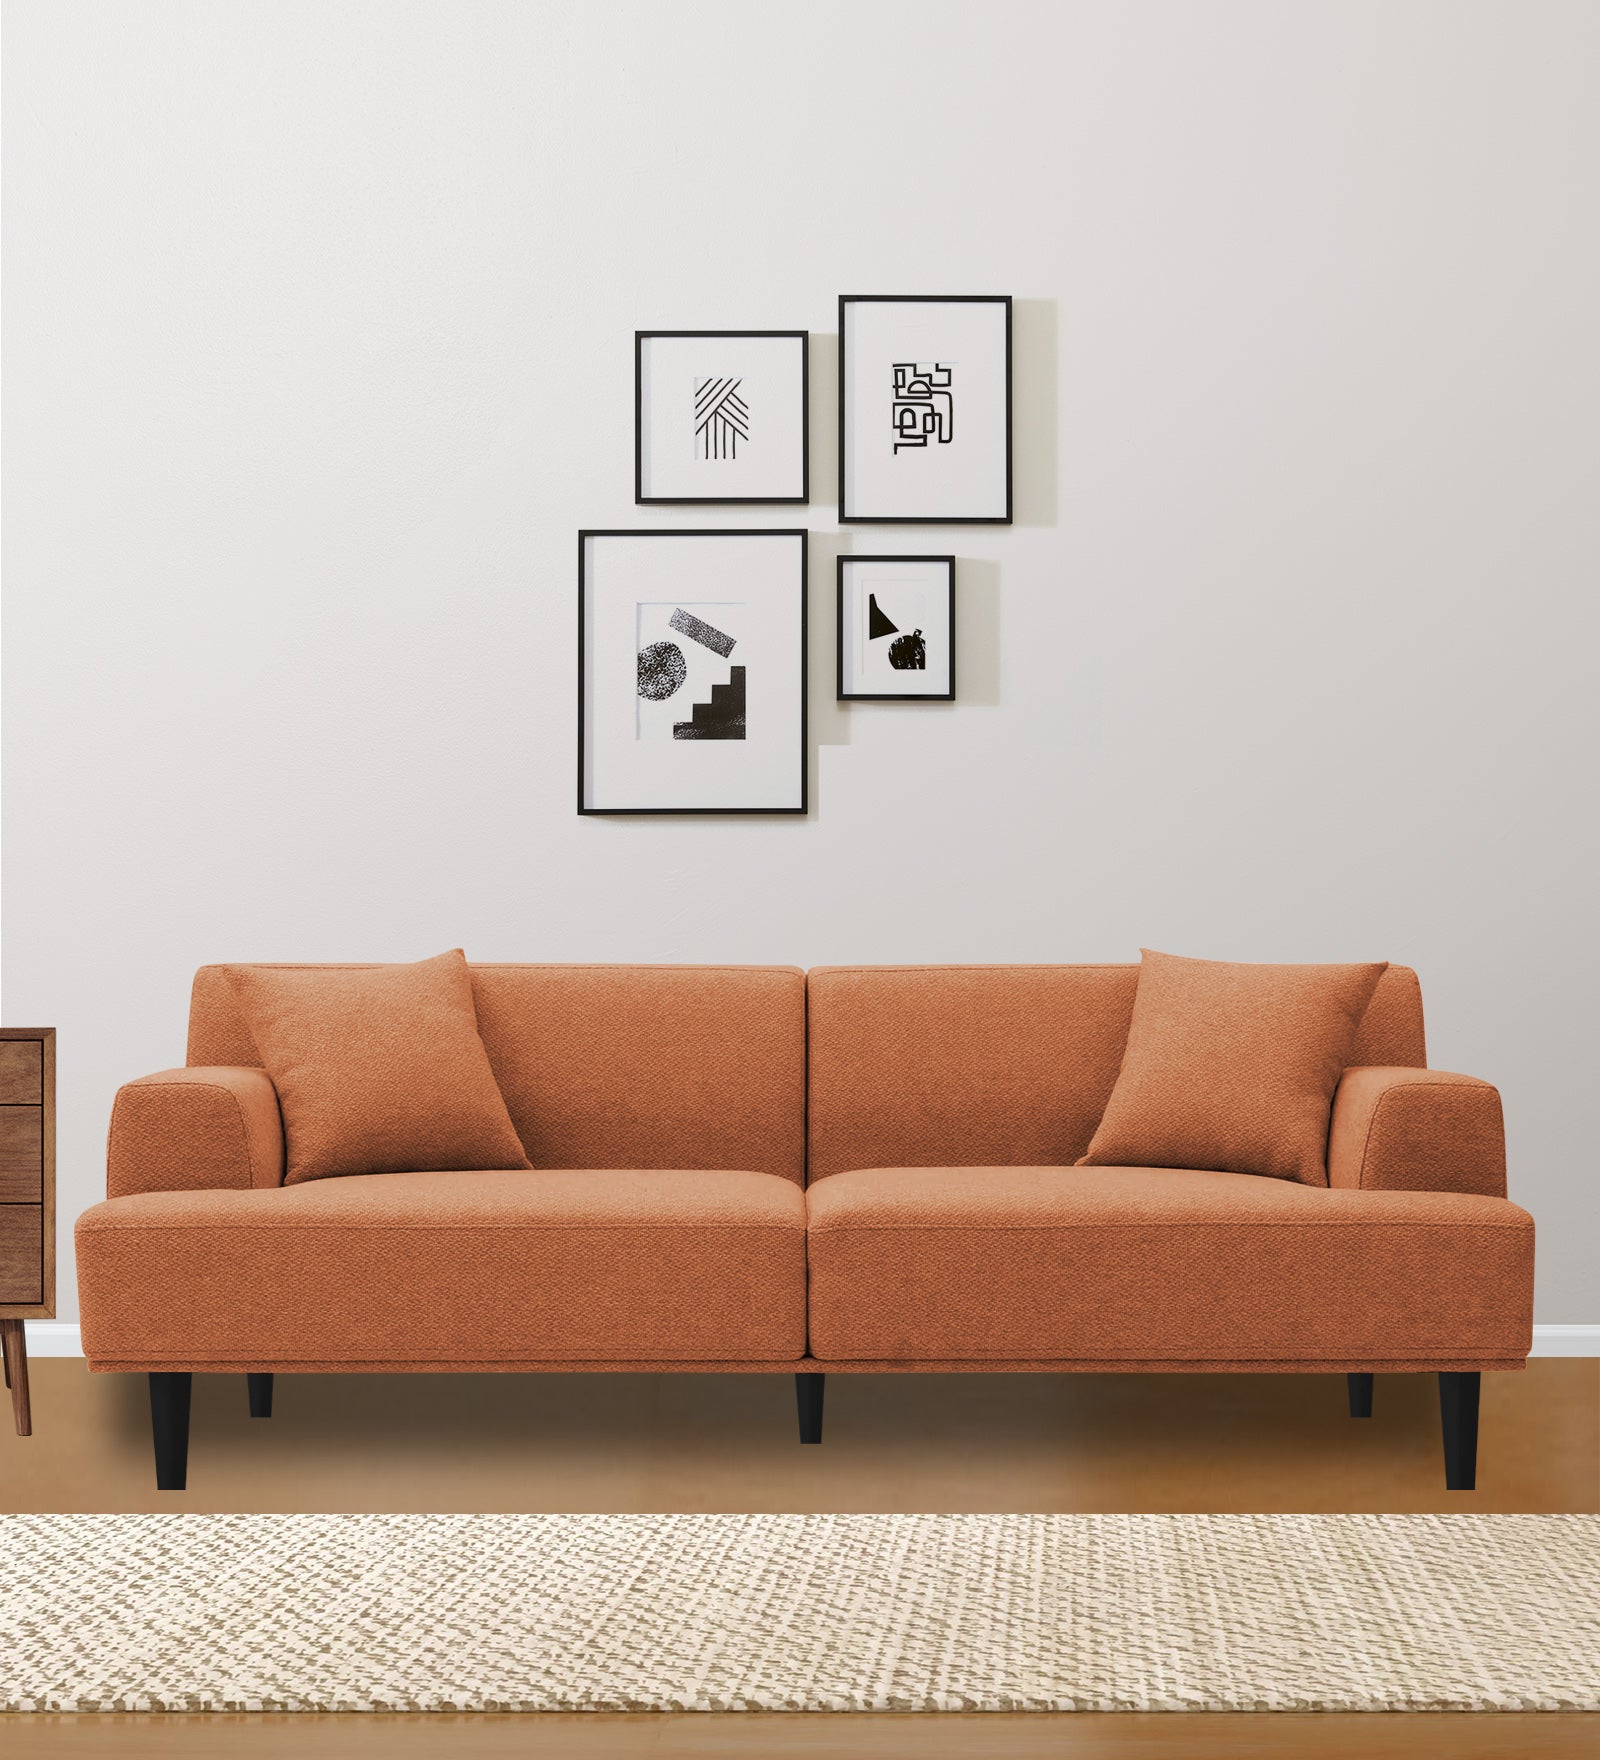 Cobby Fabric 3 Seater Sofa in Safforn Orange Colour